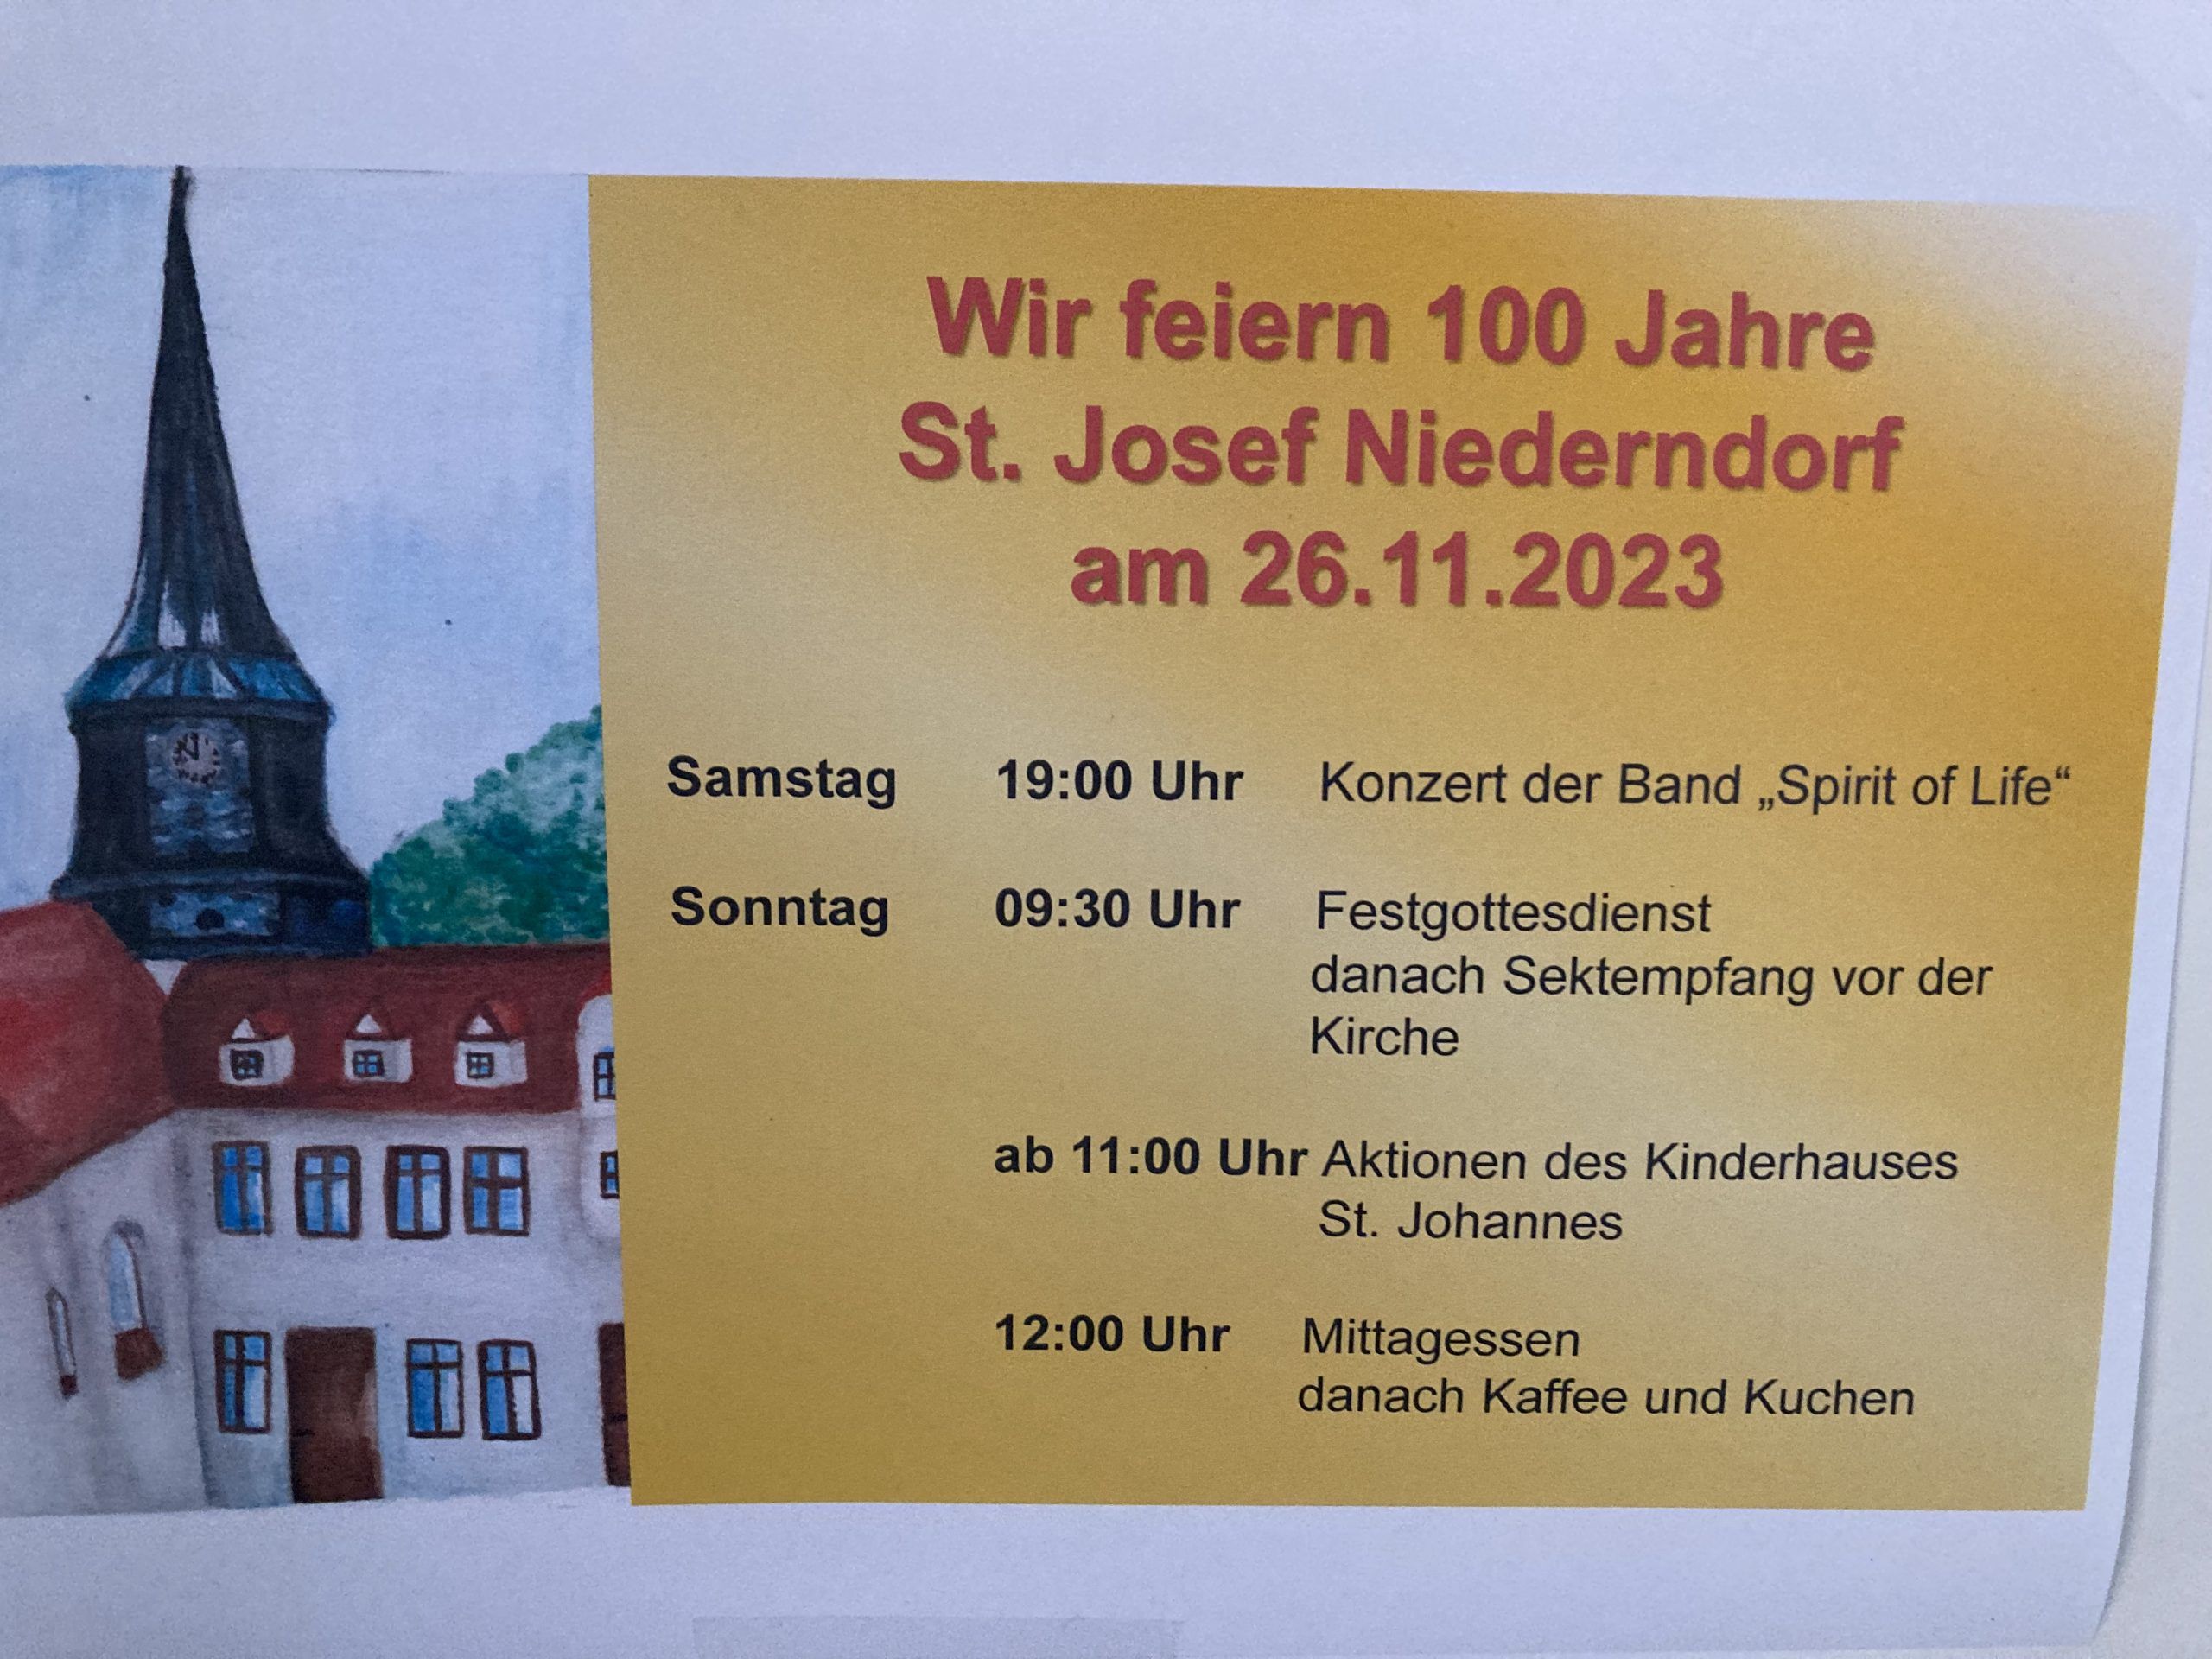 Save the Date: Die Pfarrgemeinde St. Josef Niederndorf feiert